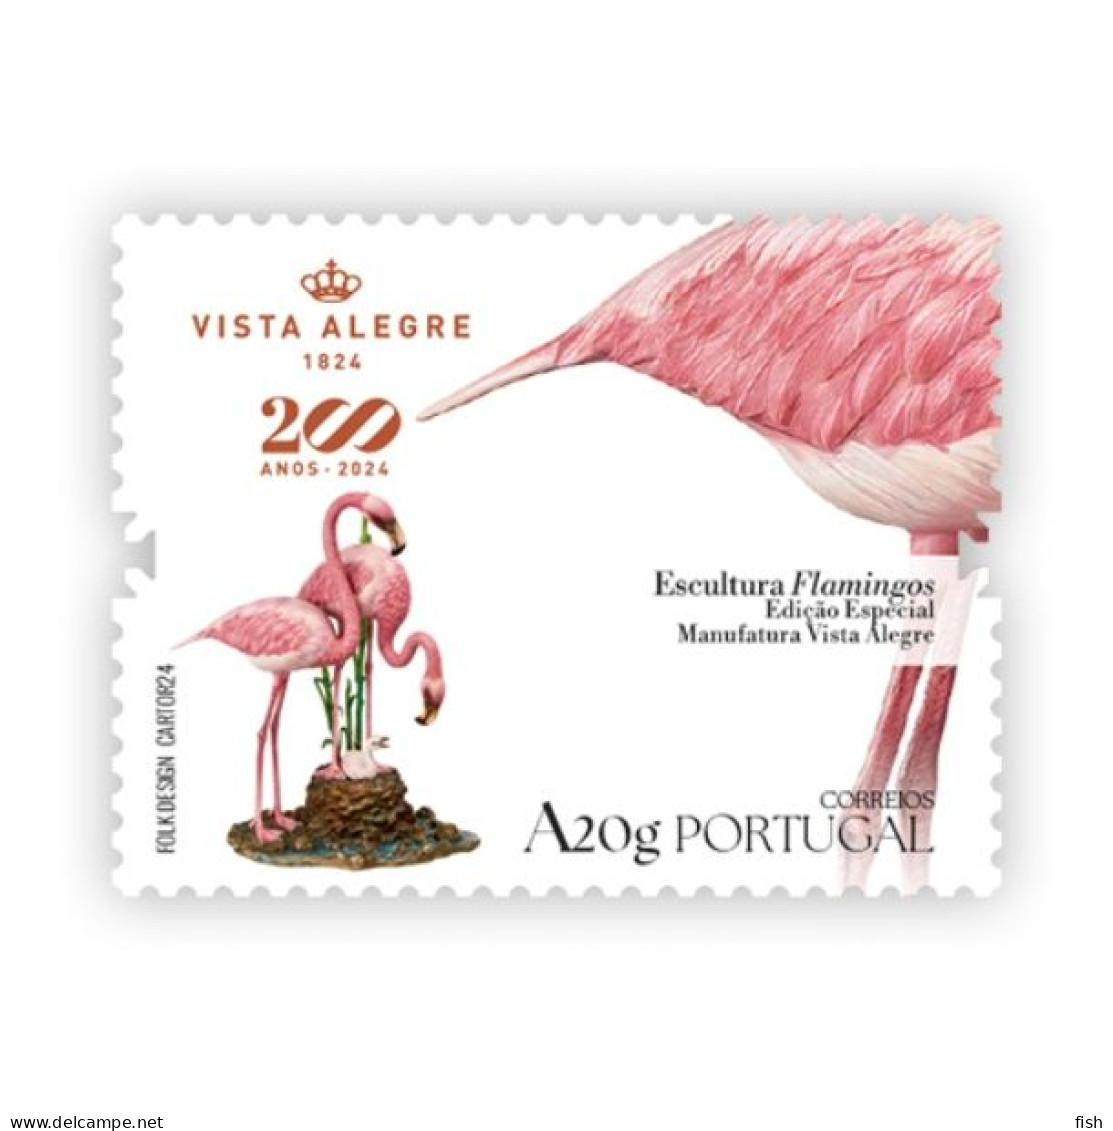 Portugal ** & 200 Years Of Vista Alegre, Flamingo Sculpture, Special Edition Manufatura Vista Alegre 1824-2024 (799) - Fabbriche E Imprese